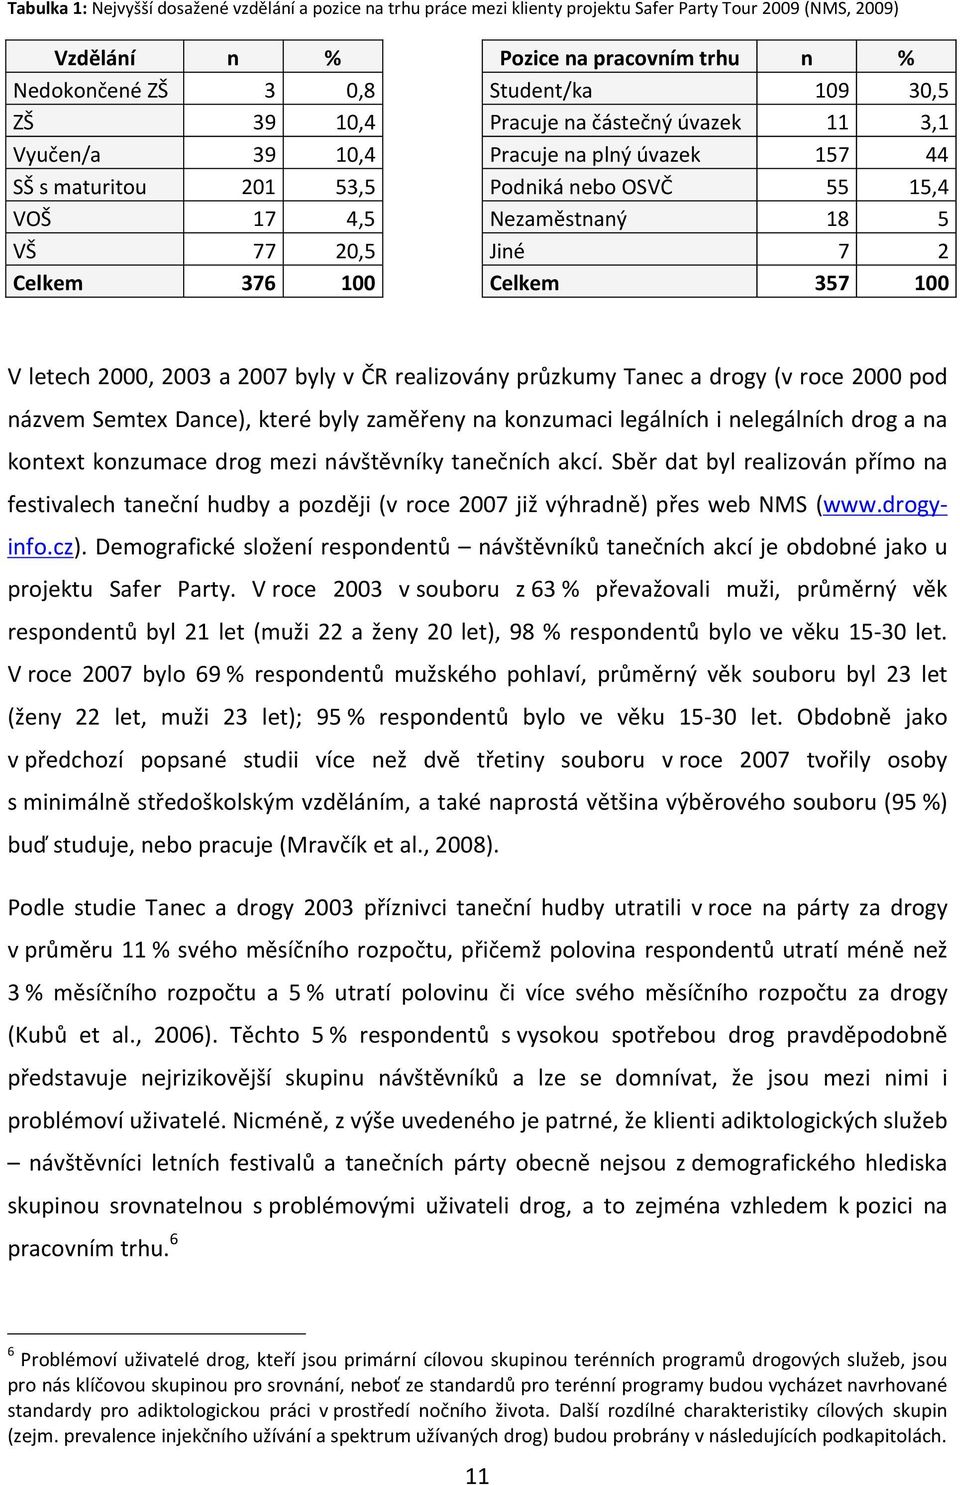 376 100 Celkem 357 100 V letech 2000, 2003 a 2007 byly v ČR realizovány průzkumy Tanec a drogy (v roce 2000 pod názvem Semtex Dance), které byly zaměřeny na konzumaci legálních i nelegálních drog a